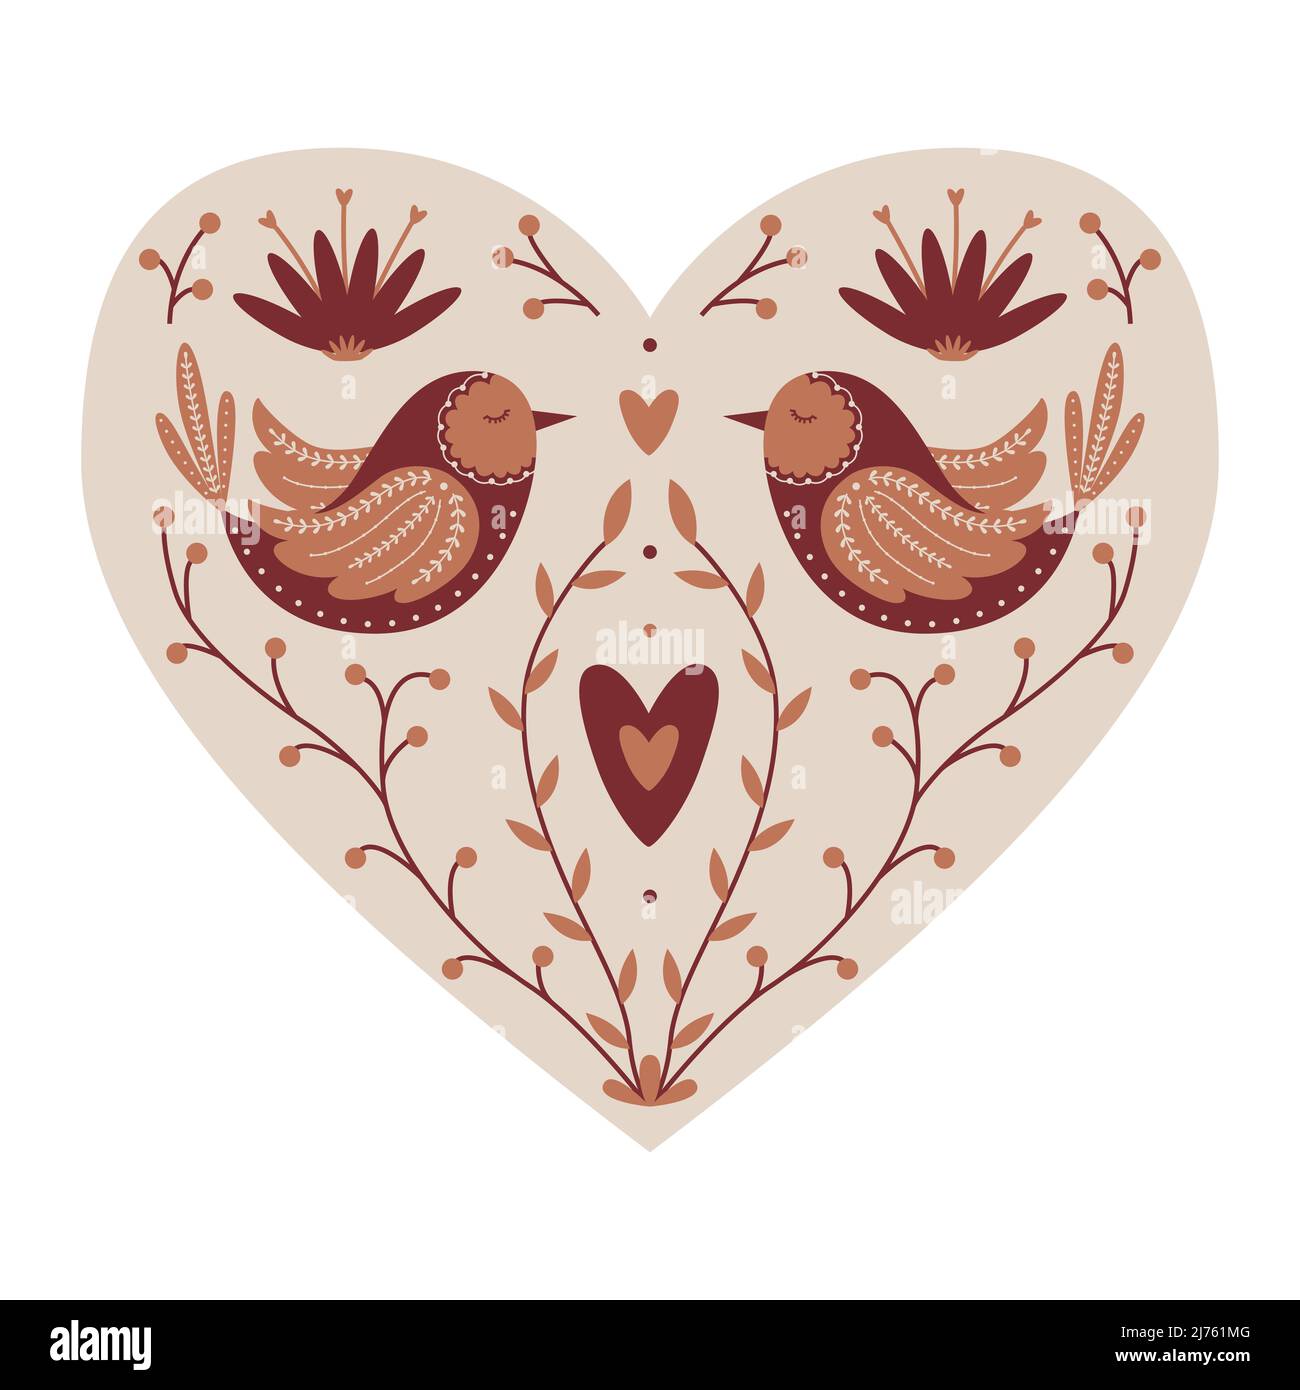 Coeur mystique symétrique avec des oiseaux, des brindilles, des coeurs. Élément décoratif pour cartes de Saint-Valentin, design d'emballage. Isola de l'illustration à vecteur de couleur Illustration de Vecteur